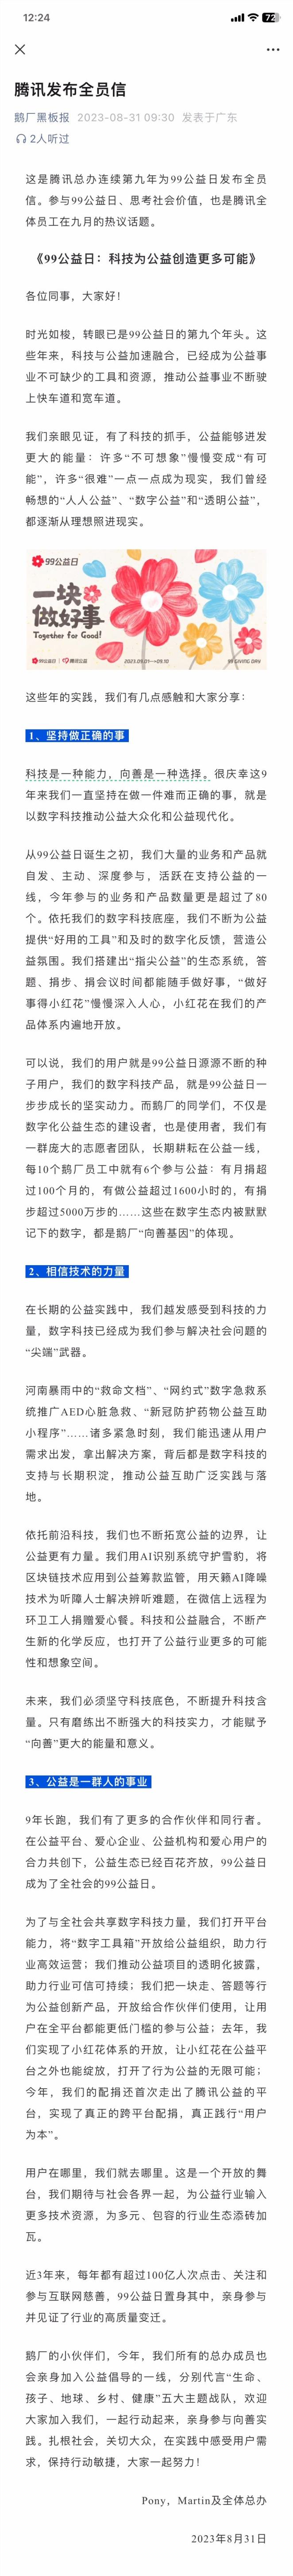 马化腾、刘炽平发全员信 腾讯九月重要活动正式官宣